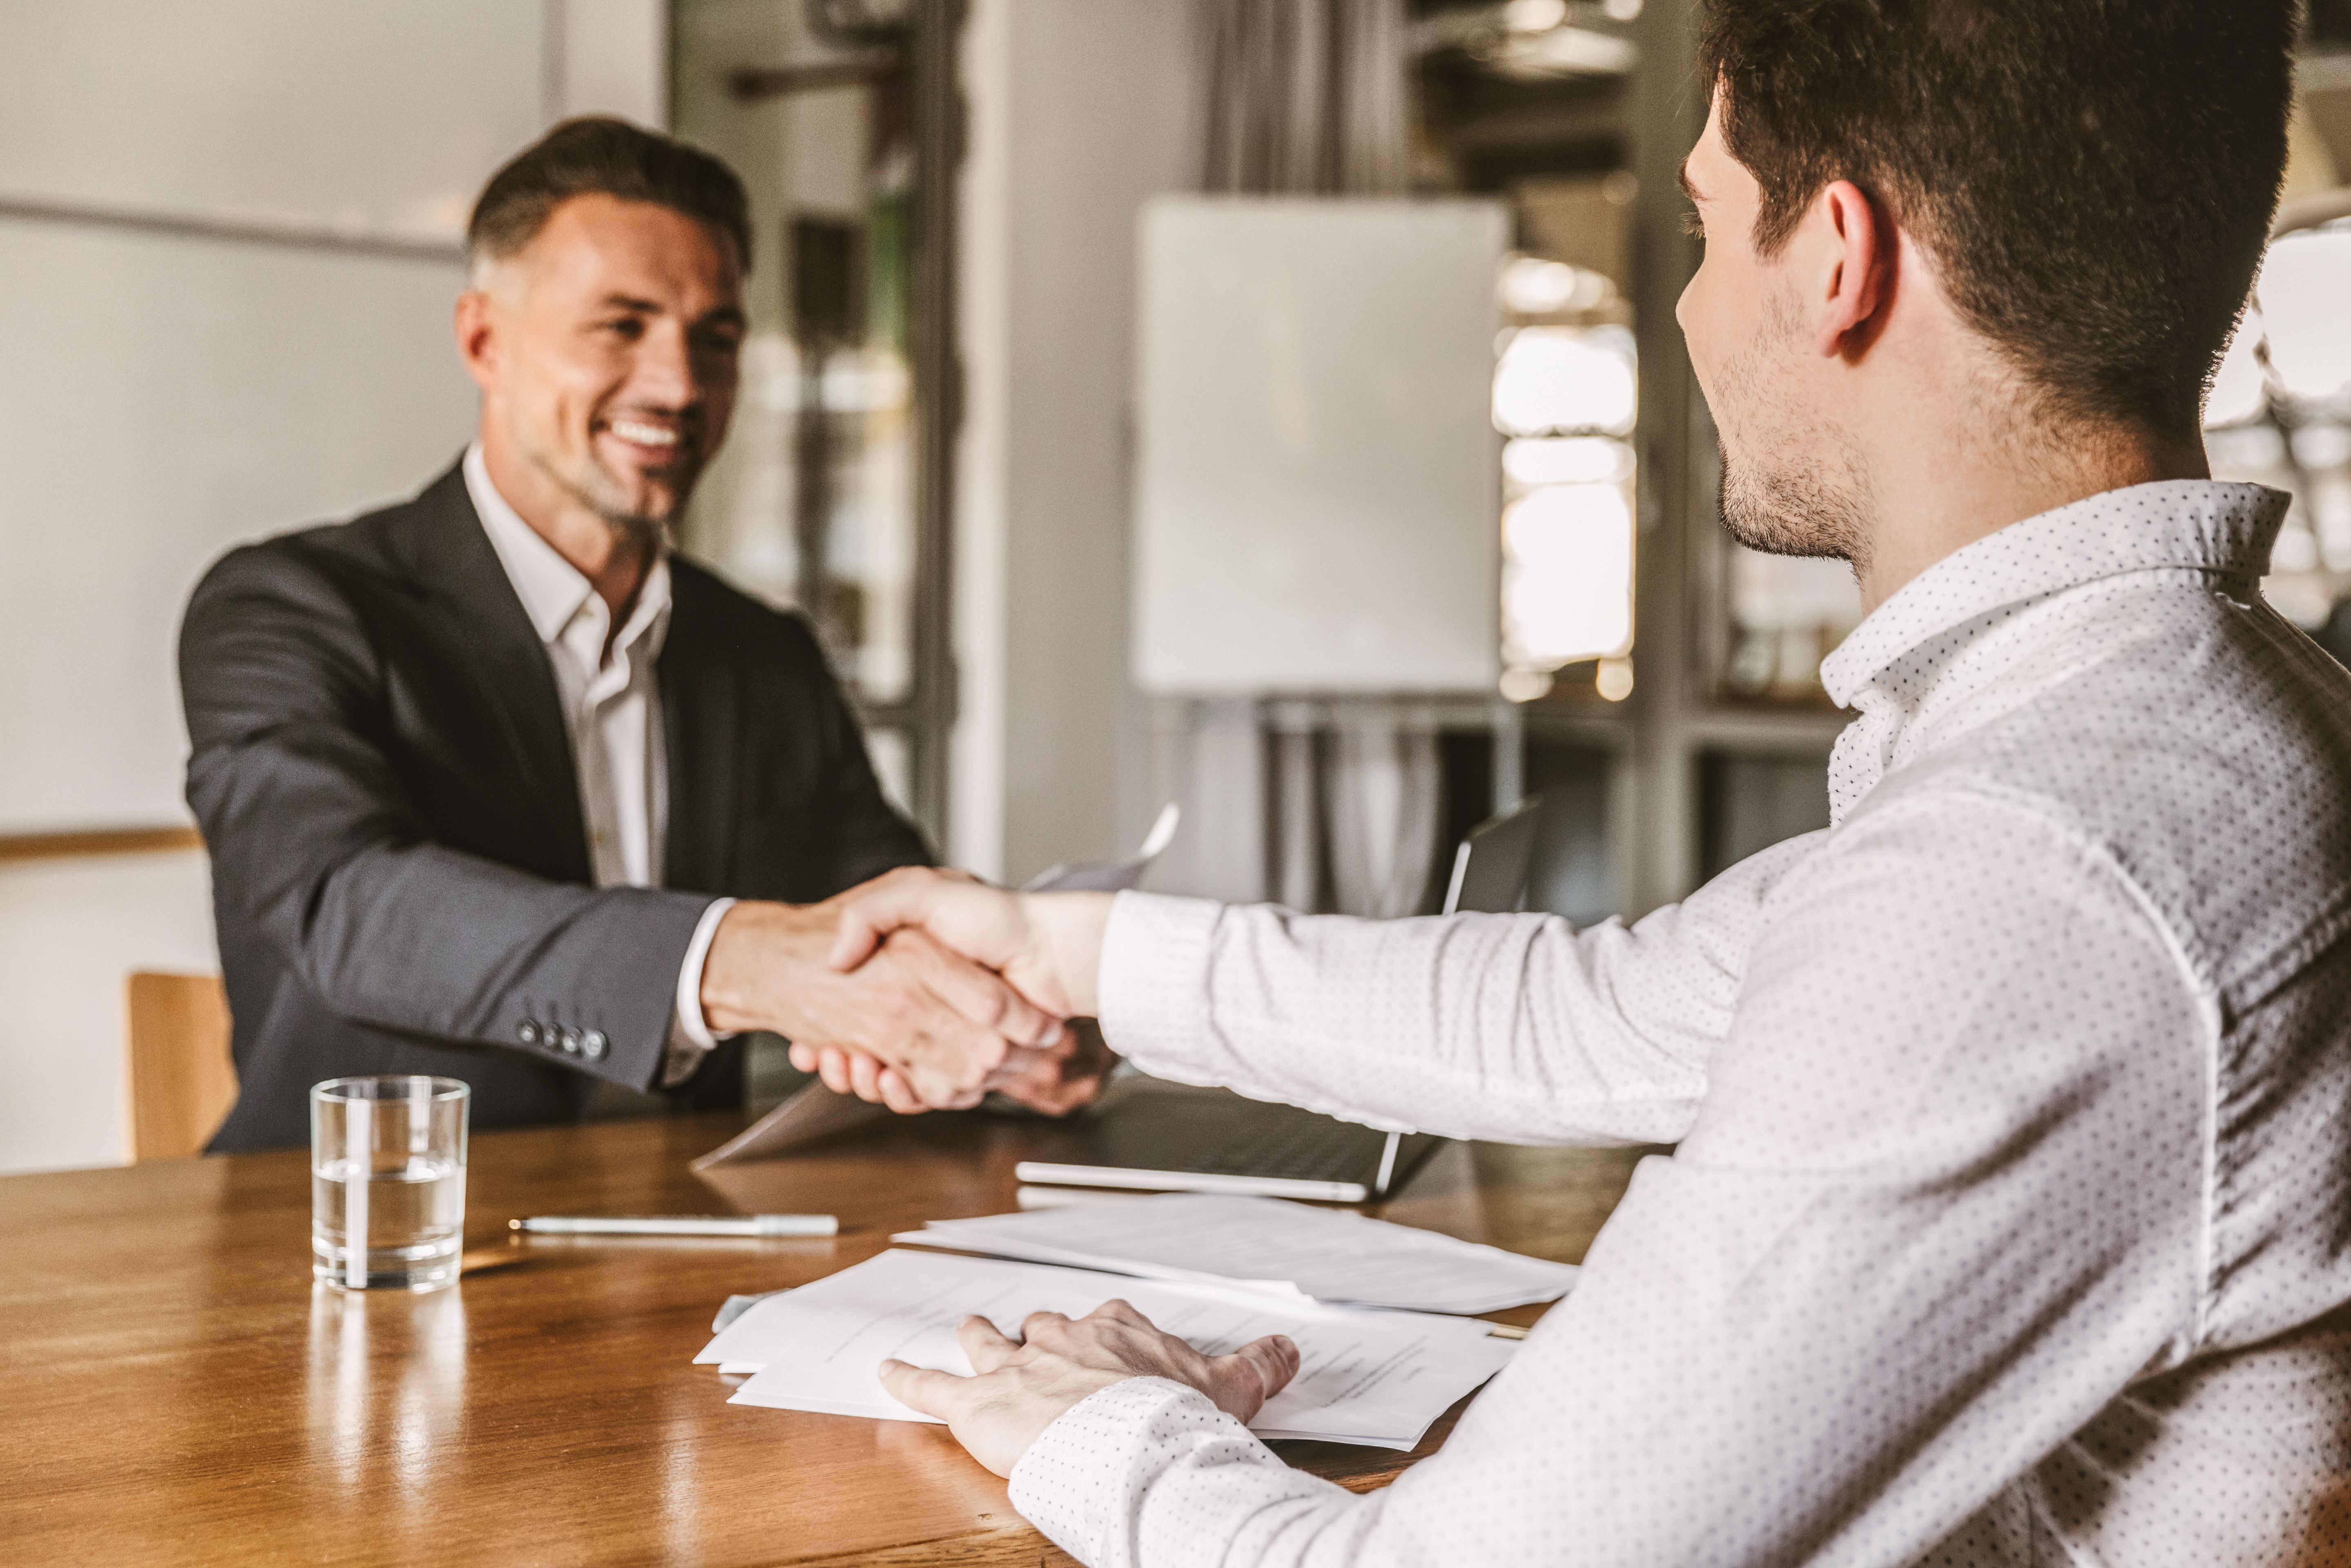 Twee mannen in pak tegenover elkaar aan een bureau schudden elkaar de hand voor een deal.